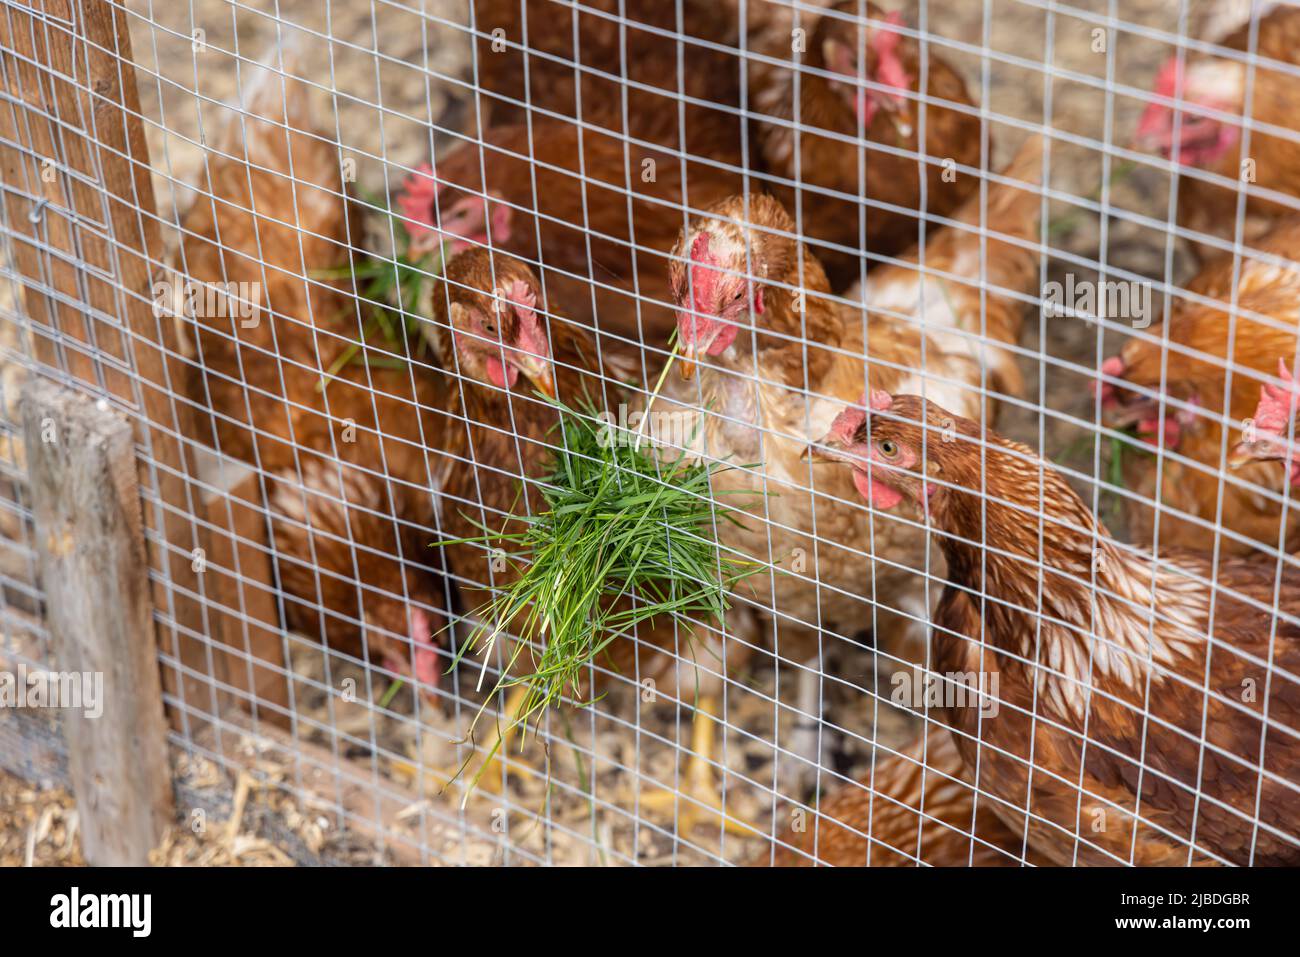 Gros plan sur un groupe de poules brun ISA vu à travers le filet de poulet dans une coop. Les lames vertes fraîches de l'herbe adhèrent à l'enceinte au moment de l'alimentation. Banque D'Images